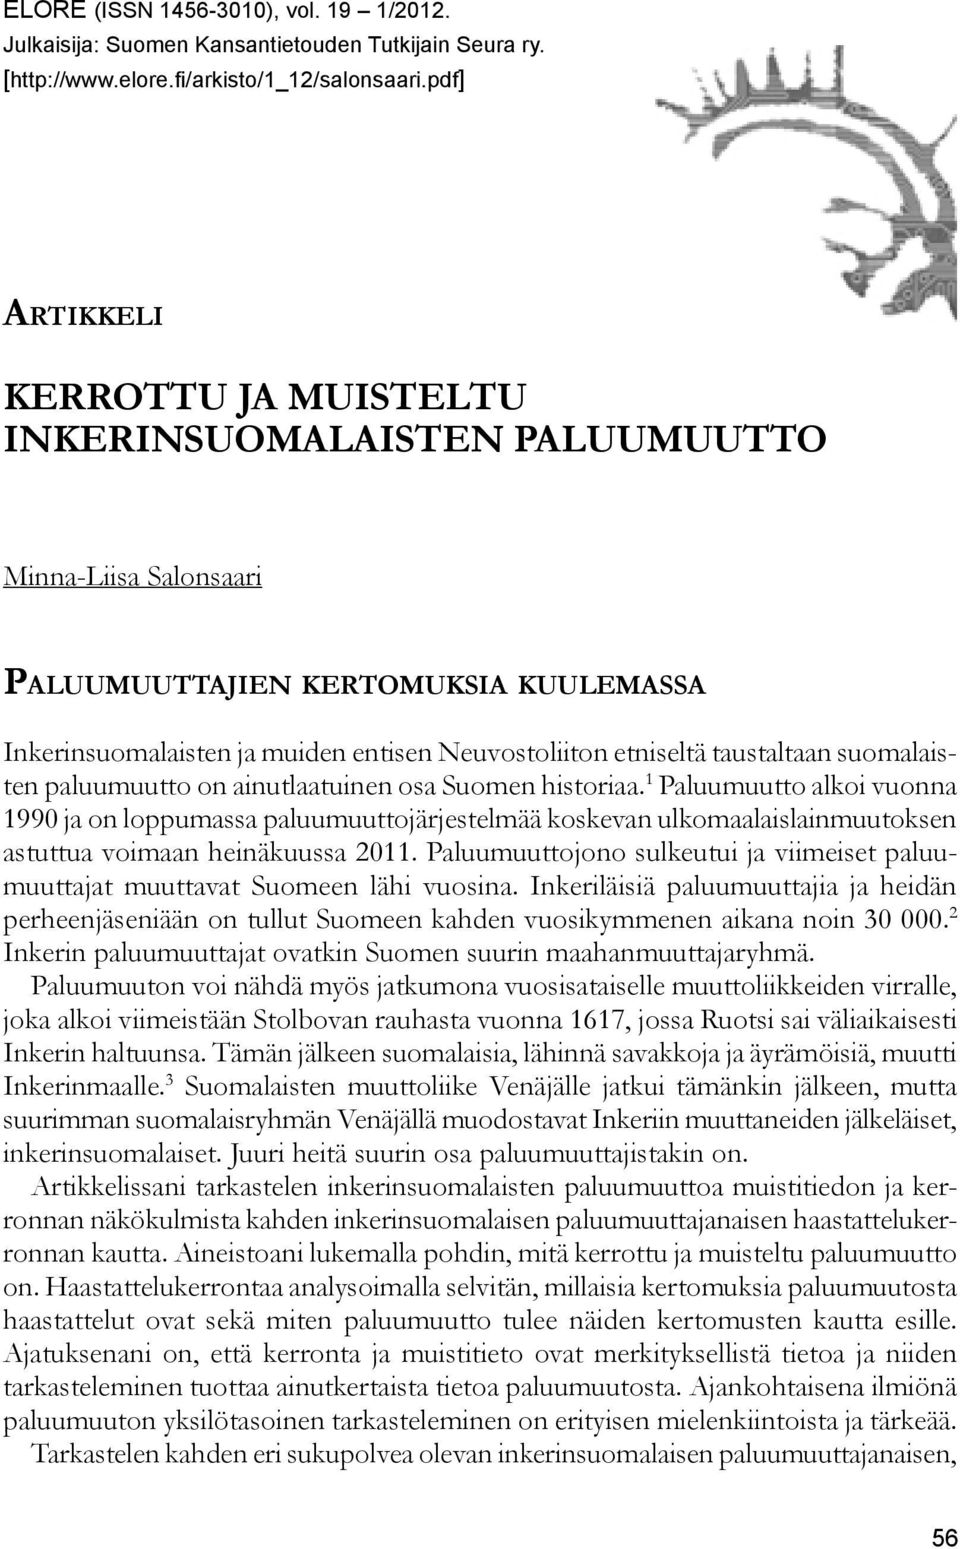 taustaltaan suomalaisten paluumuutto on ainutlaatuinen osa Suomen historiaa.